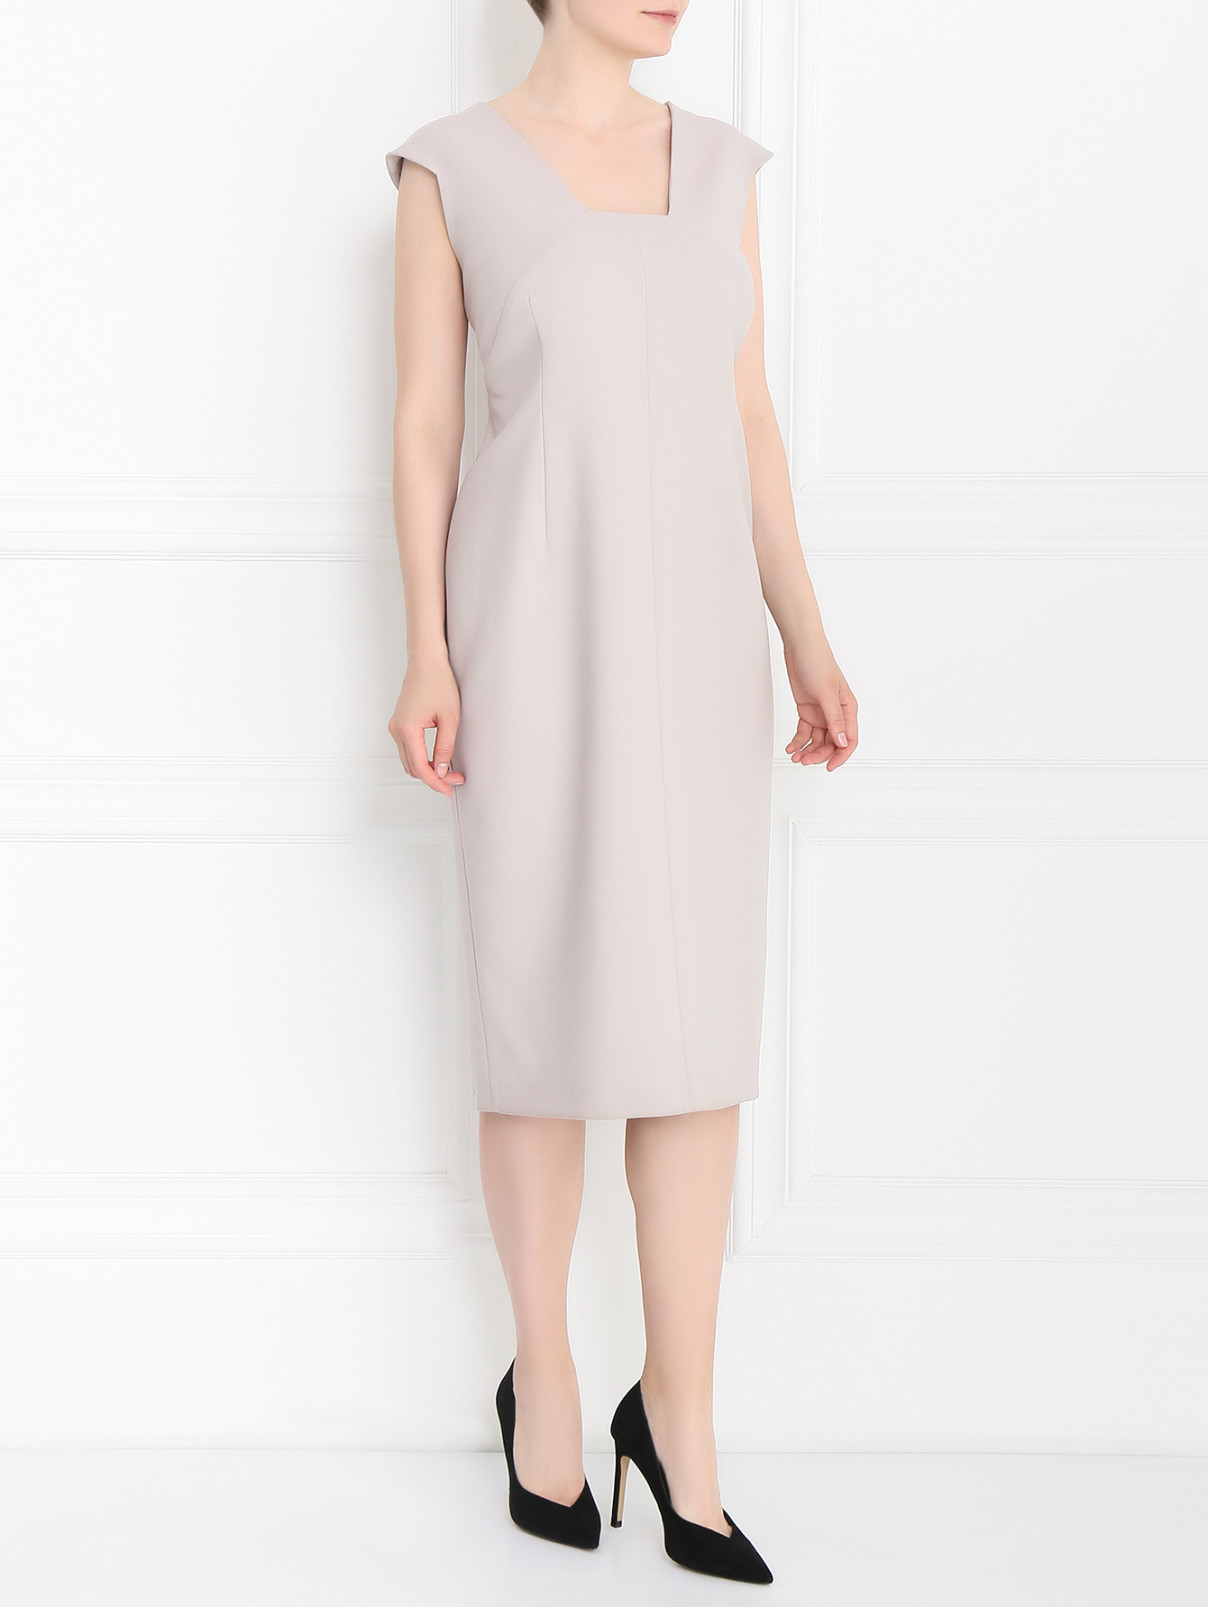 Платье-футляр из шерсти Marina Rinaldi  –  Модель Общий вид  – Цвет:  Серый